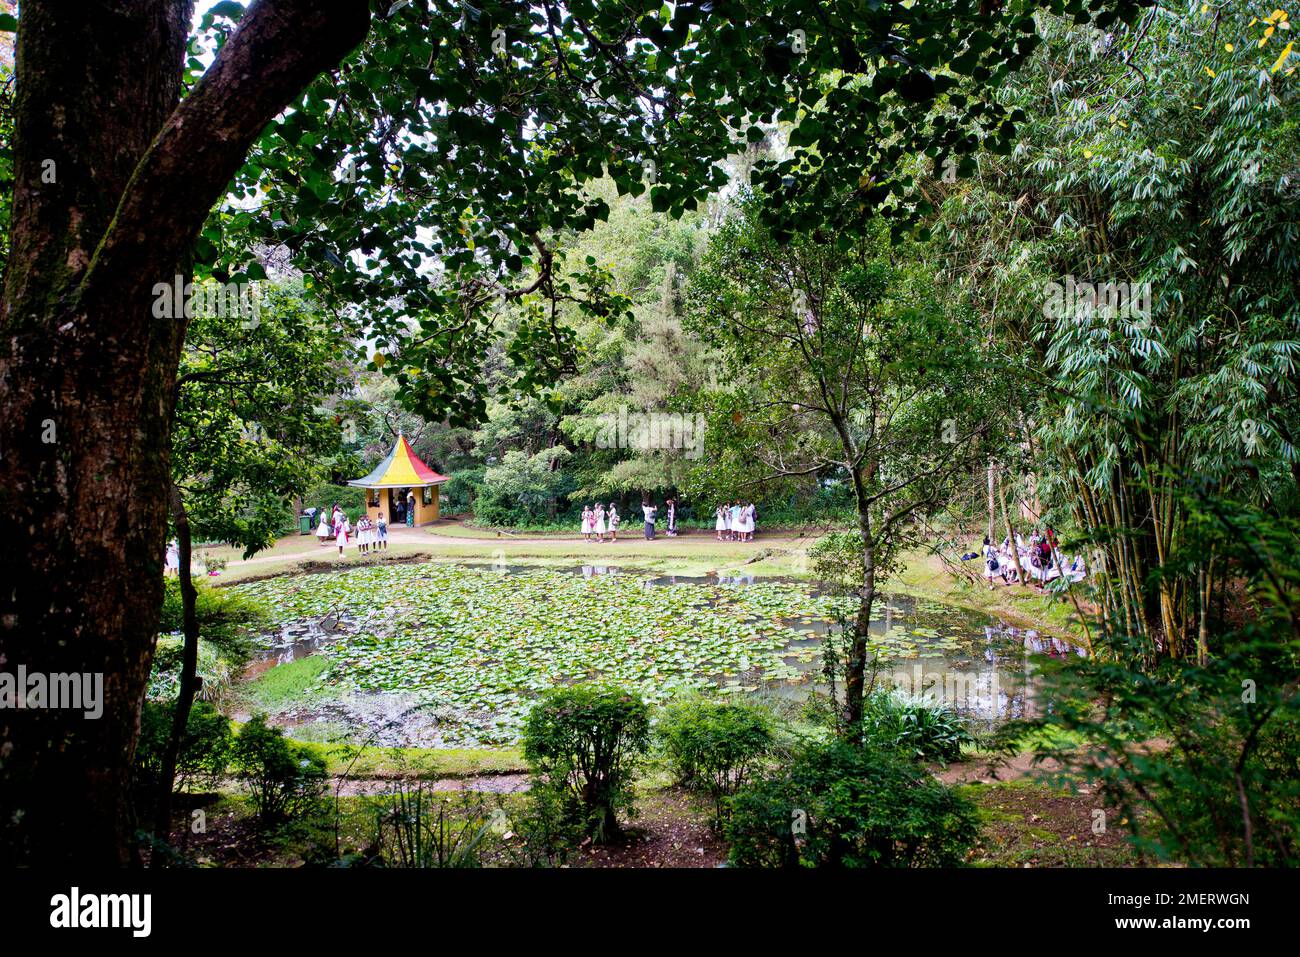 Sri Lanka, pond in park Stock Photo